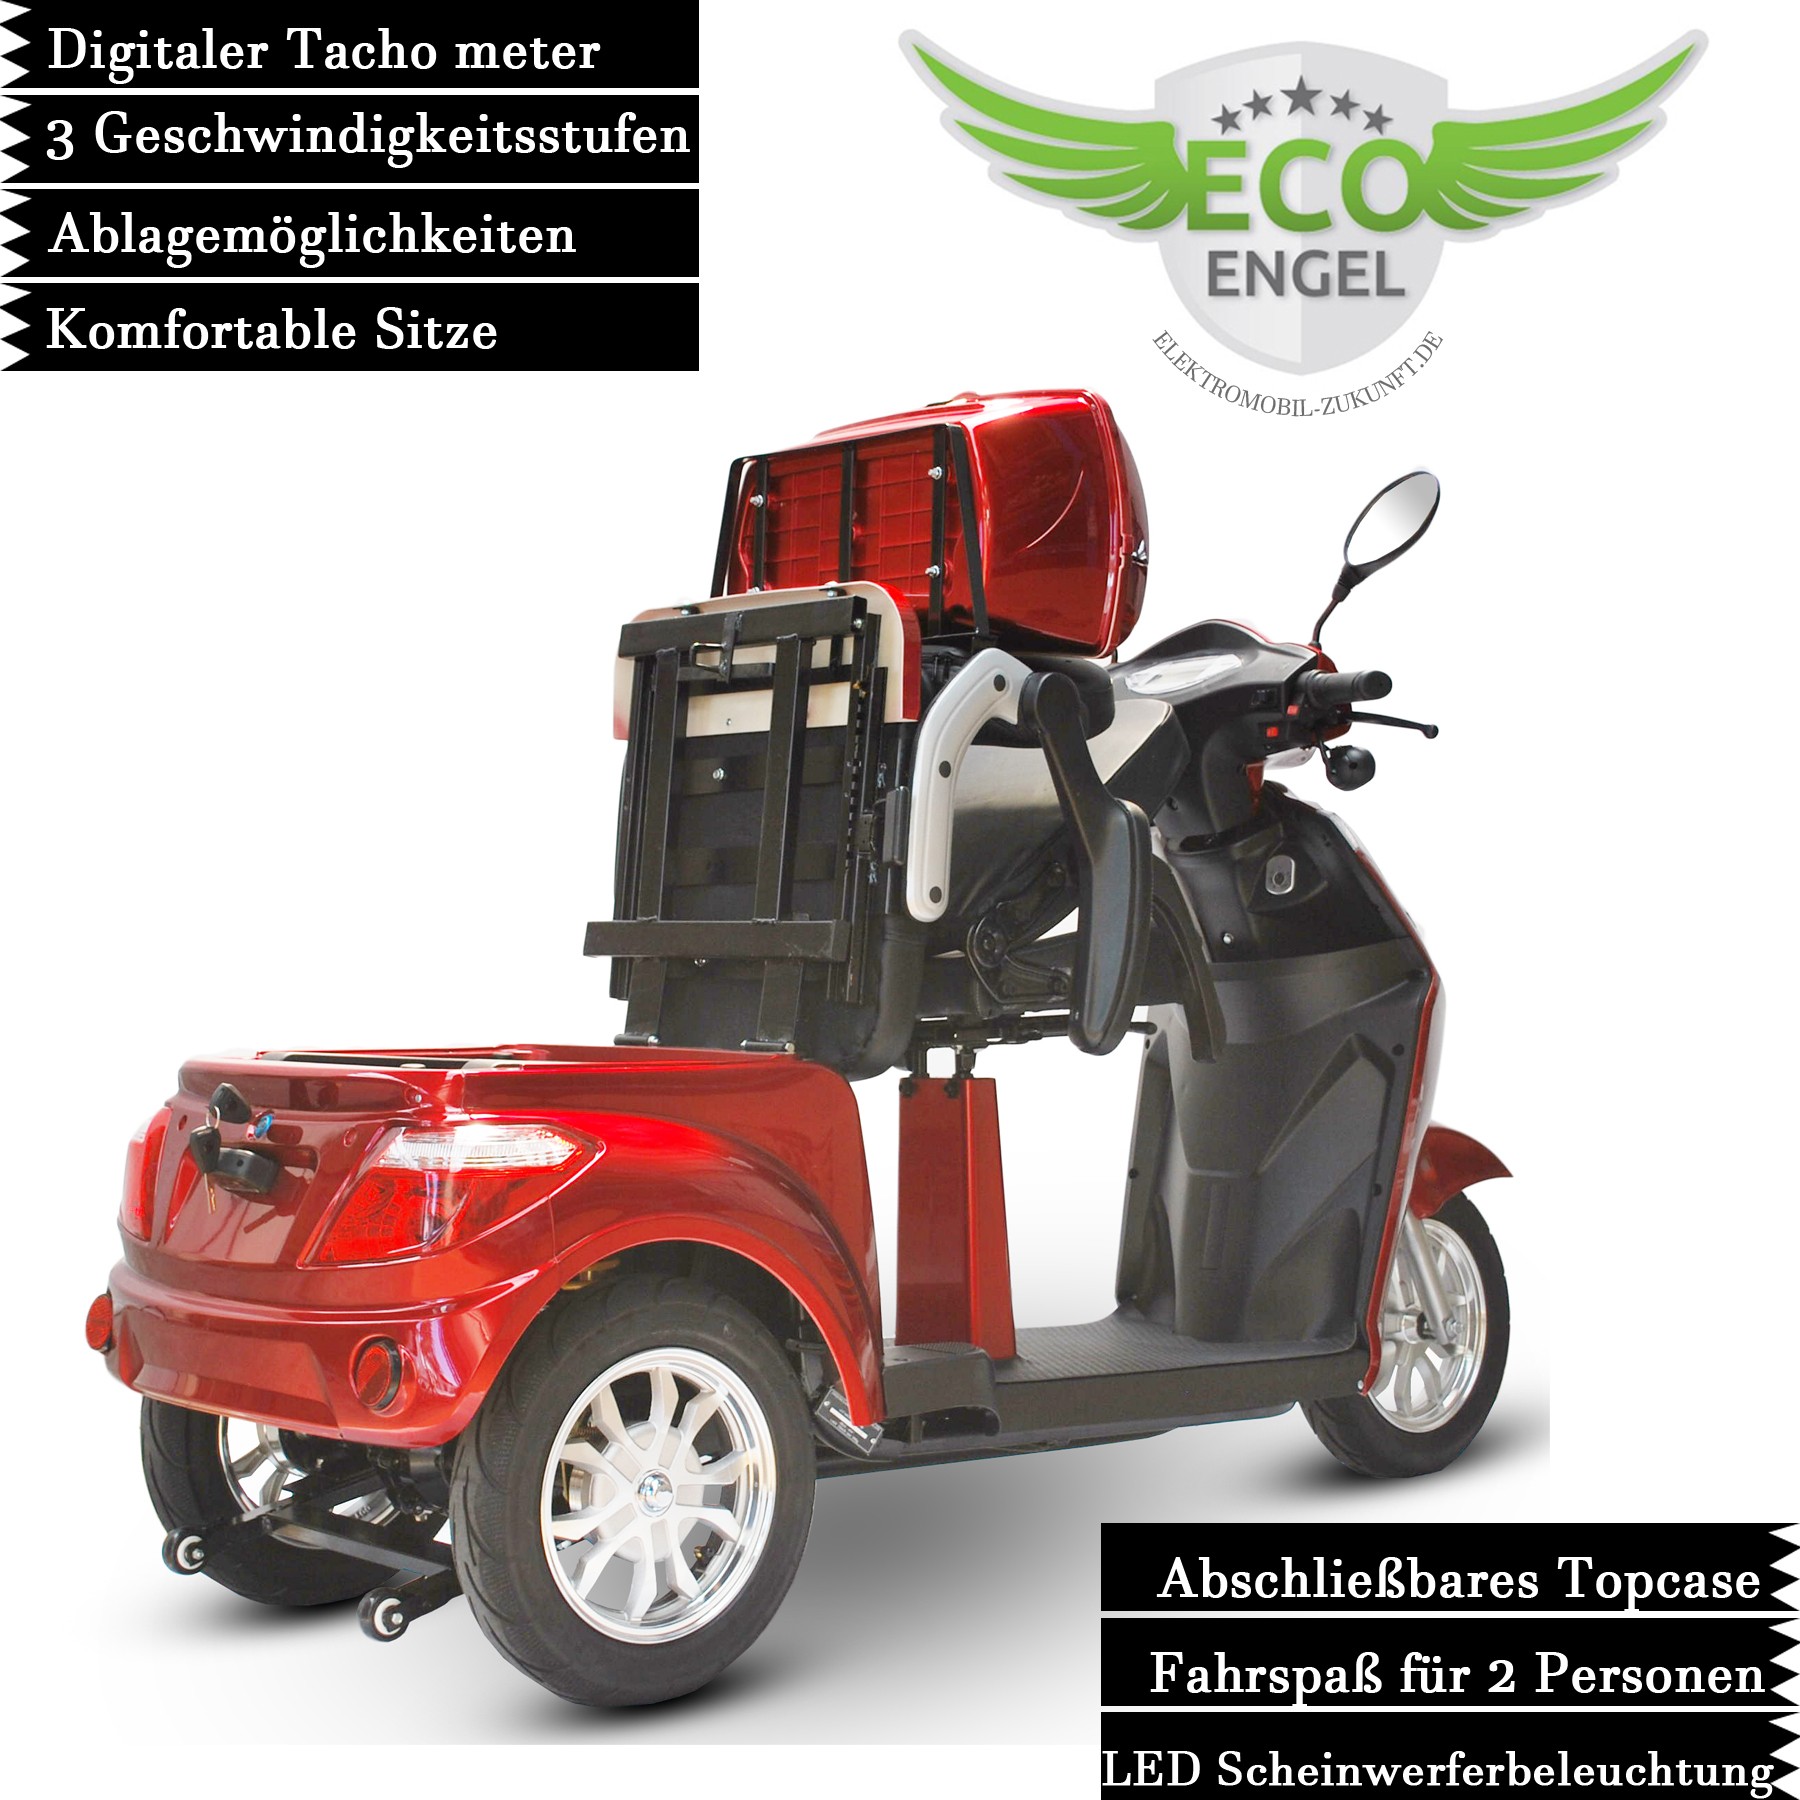 Elektro Scooter ECO ENGEL, Seniorenmobil von Electro-fun